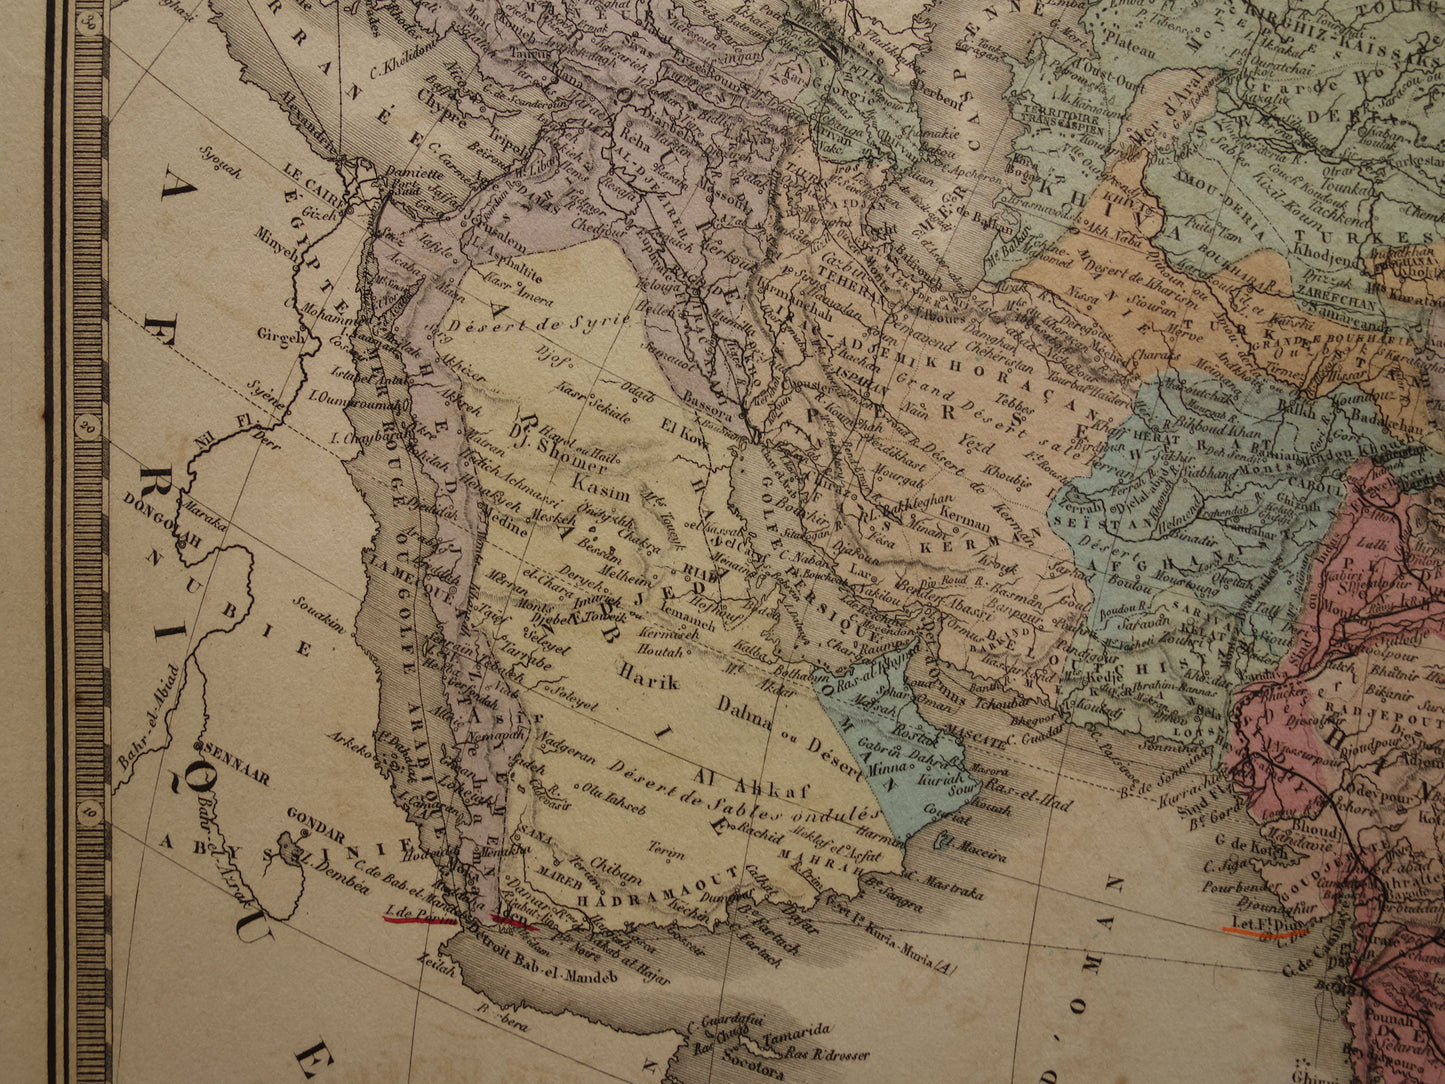 AZIË oude kaart uit 1876 originele antieke landkaart van continent Azië poster